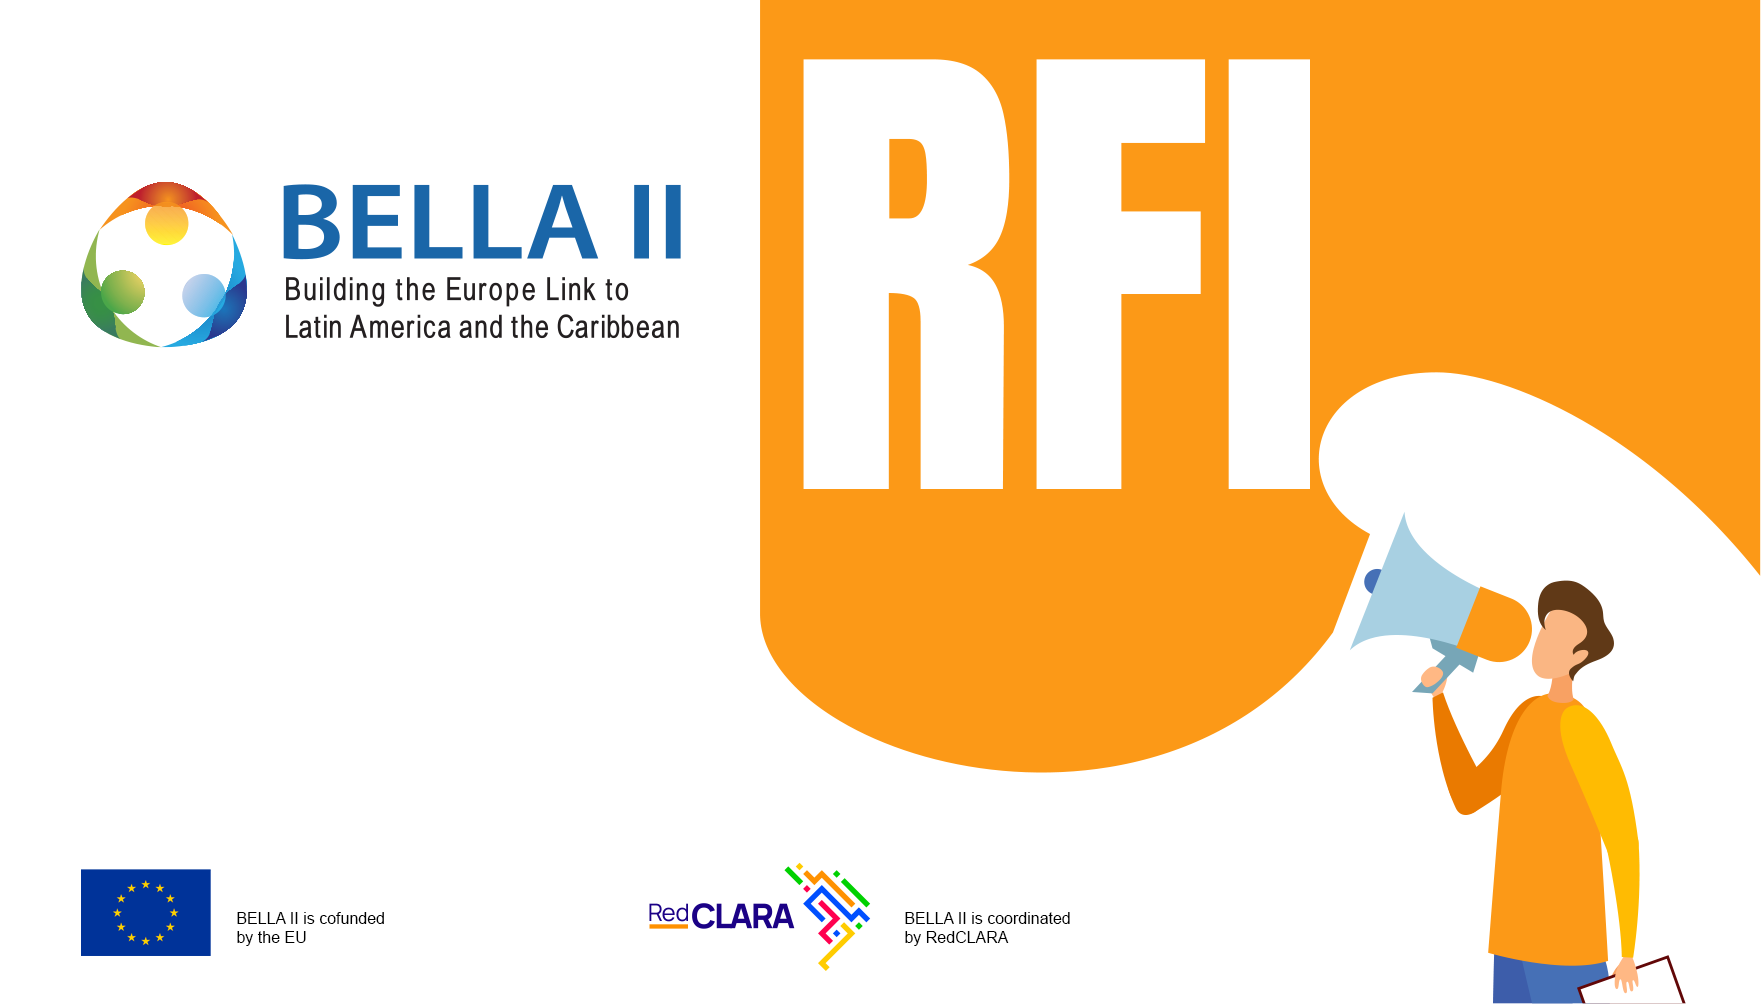 RedCLARA lança consulta pública a interessados em fazer parte do Projeto BELLA II